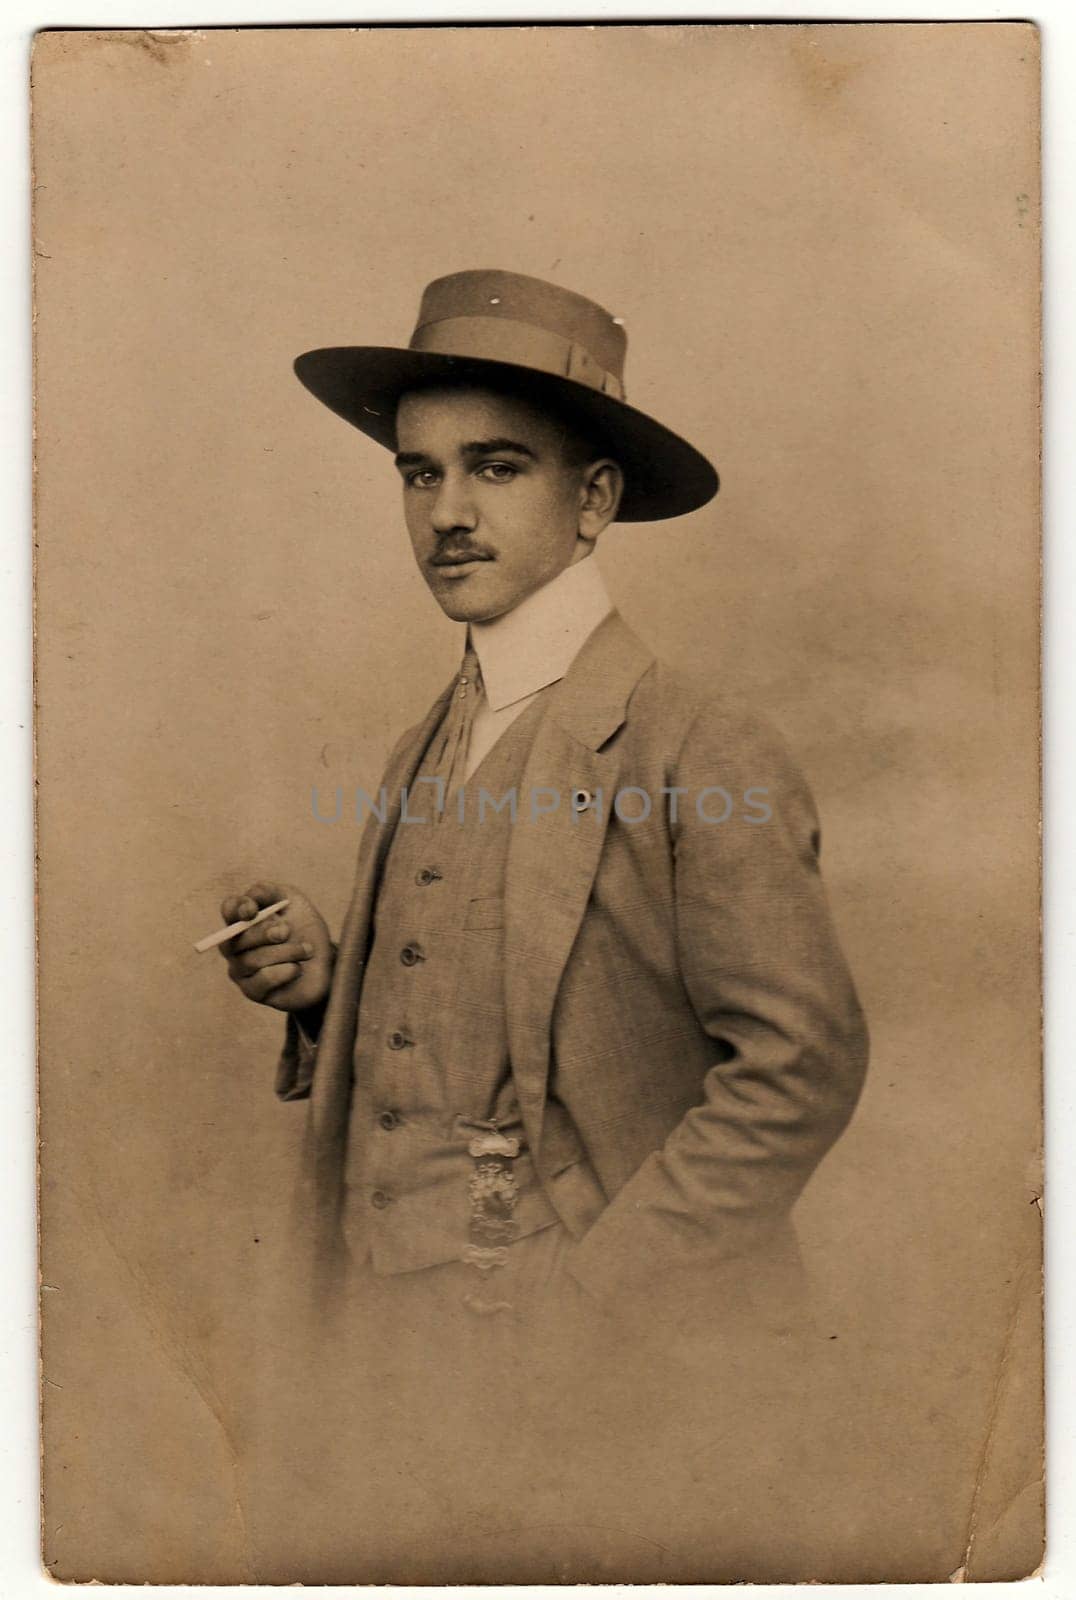 OLOMOUC, THE CZECHOSLOVAK REPUBLIC - CIRCA 1920s: Vintage photo shows dandy man with cigarette and hat. Antique black white photo.